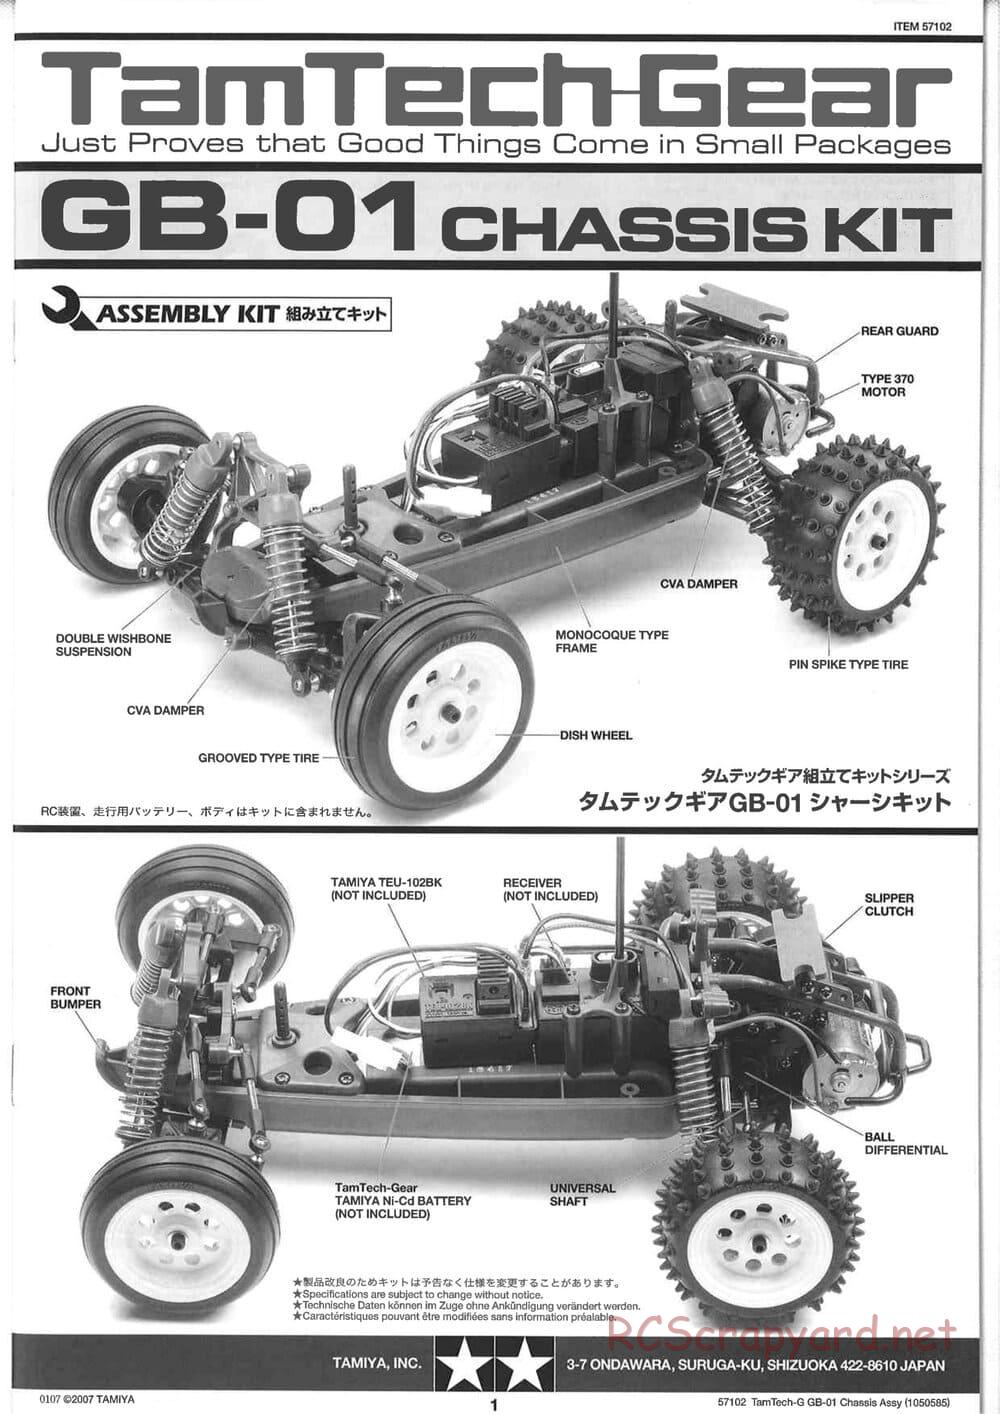 Tamiya - GB-01 Chassis - Manual - Page 1